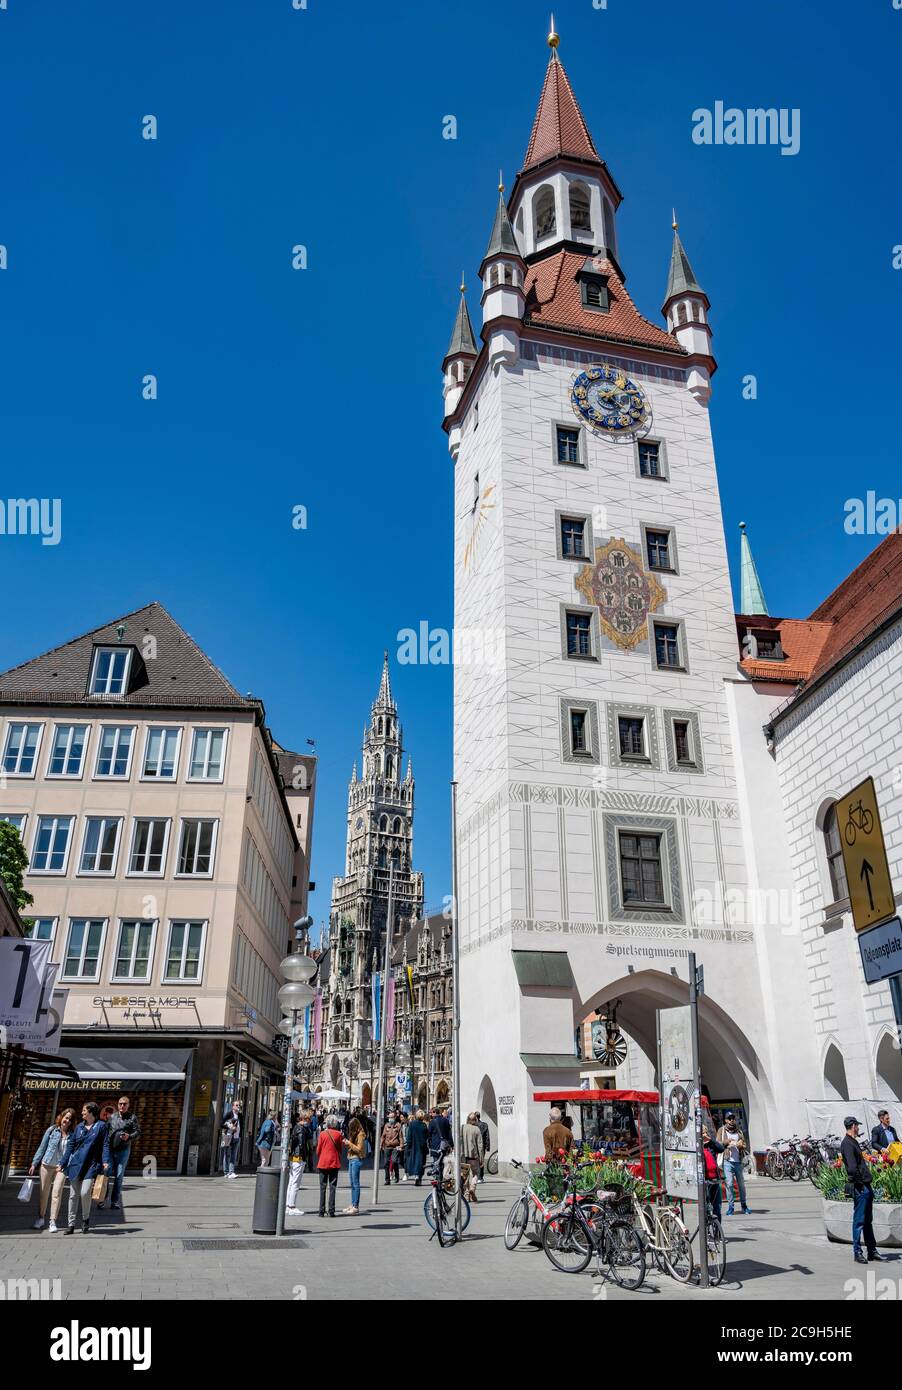 Altes Rathaus, Turm mit Spielzeugmuseum, neues Rathaus hinter, München, Bayern, Deutschland Stockfoto